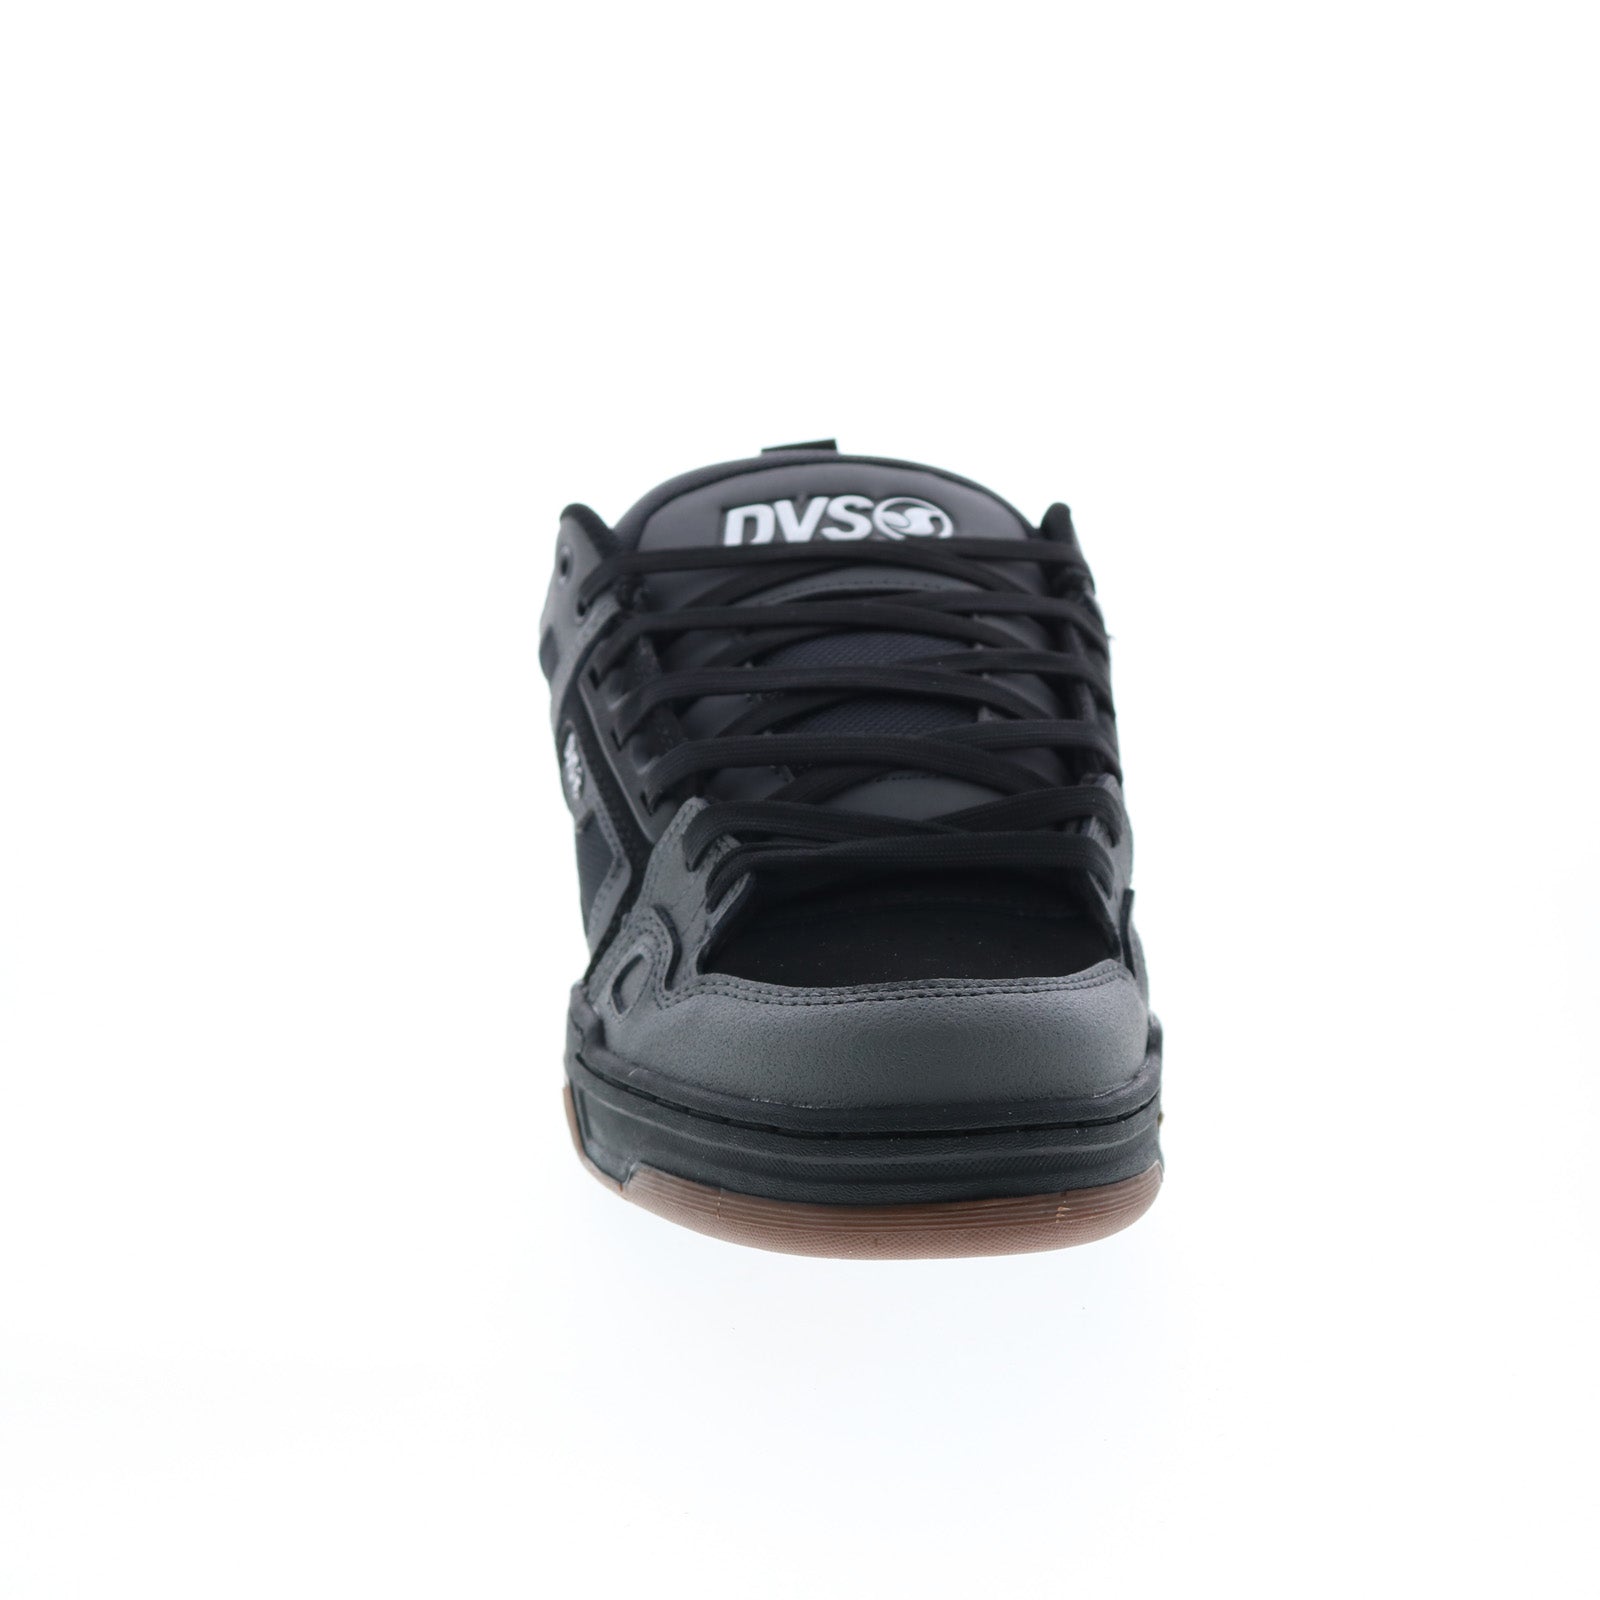 DVS Comanche DVF0000029066 Mens Black Gray Skate Inspired Sneakers